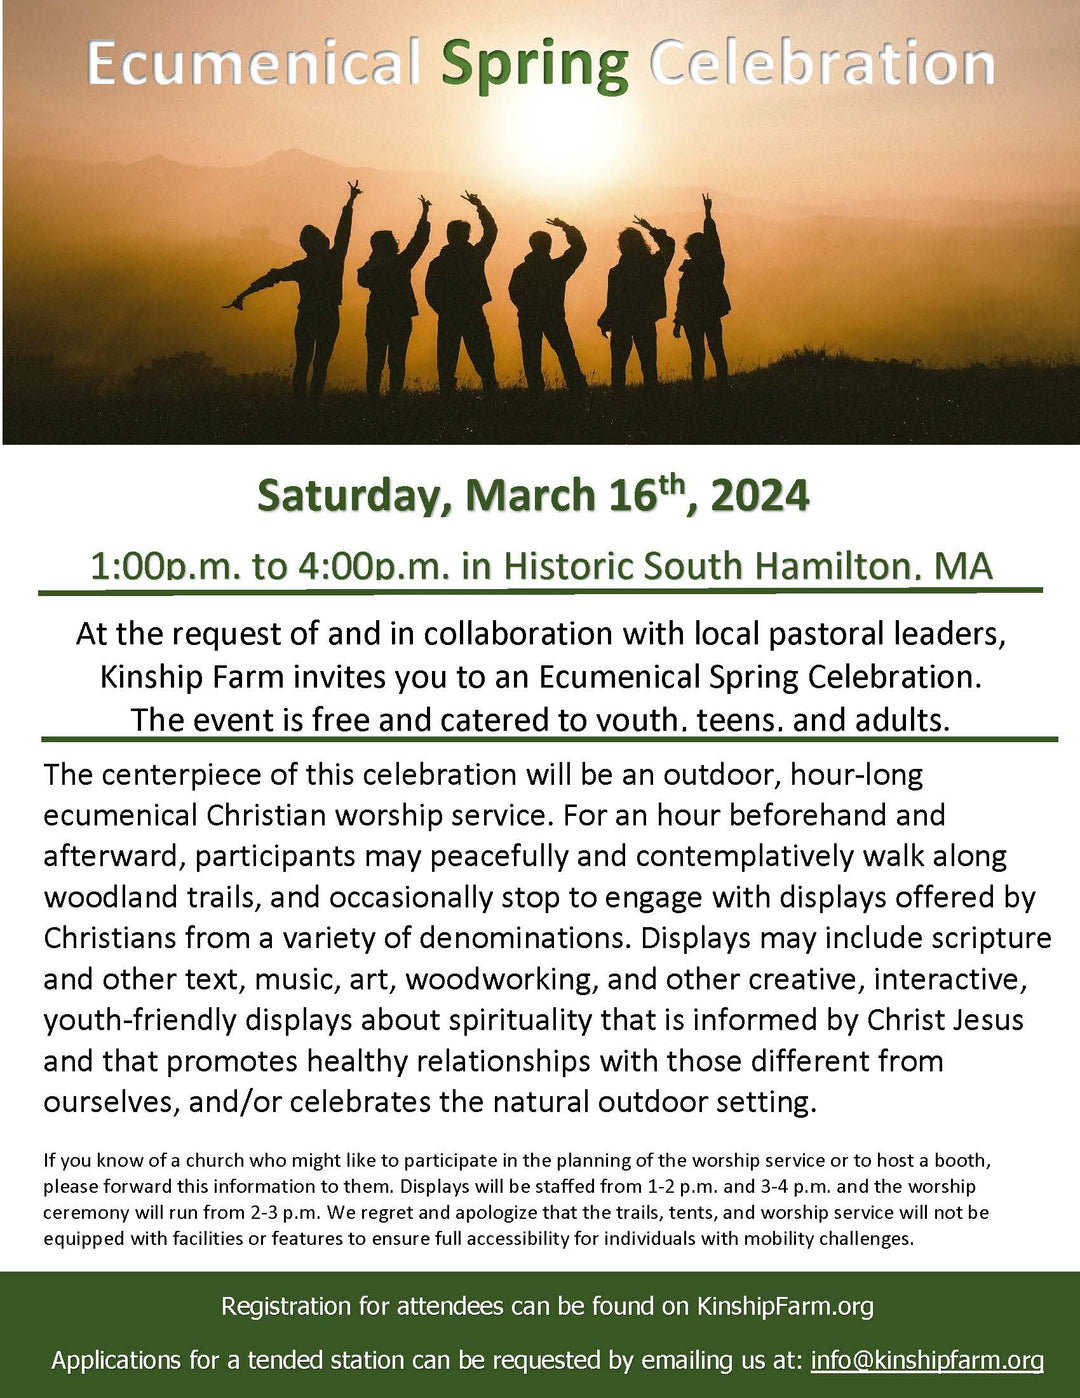 Ecumenical Spring Celebration - Free General Registration